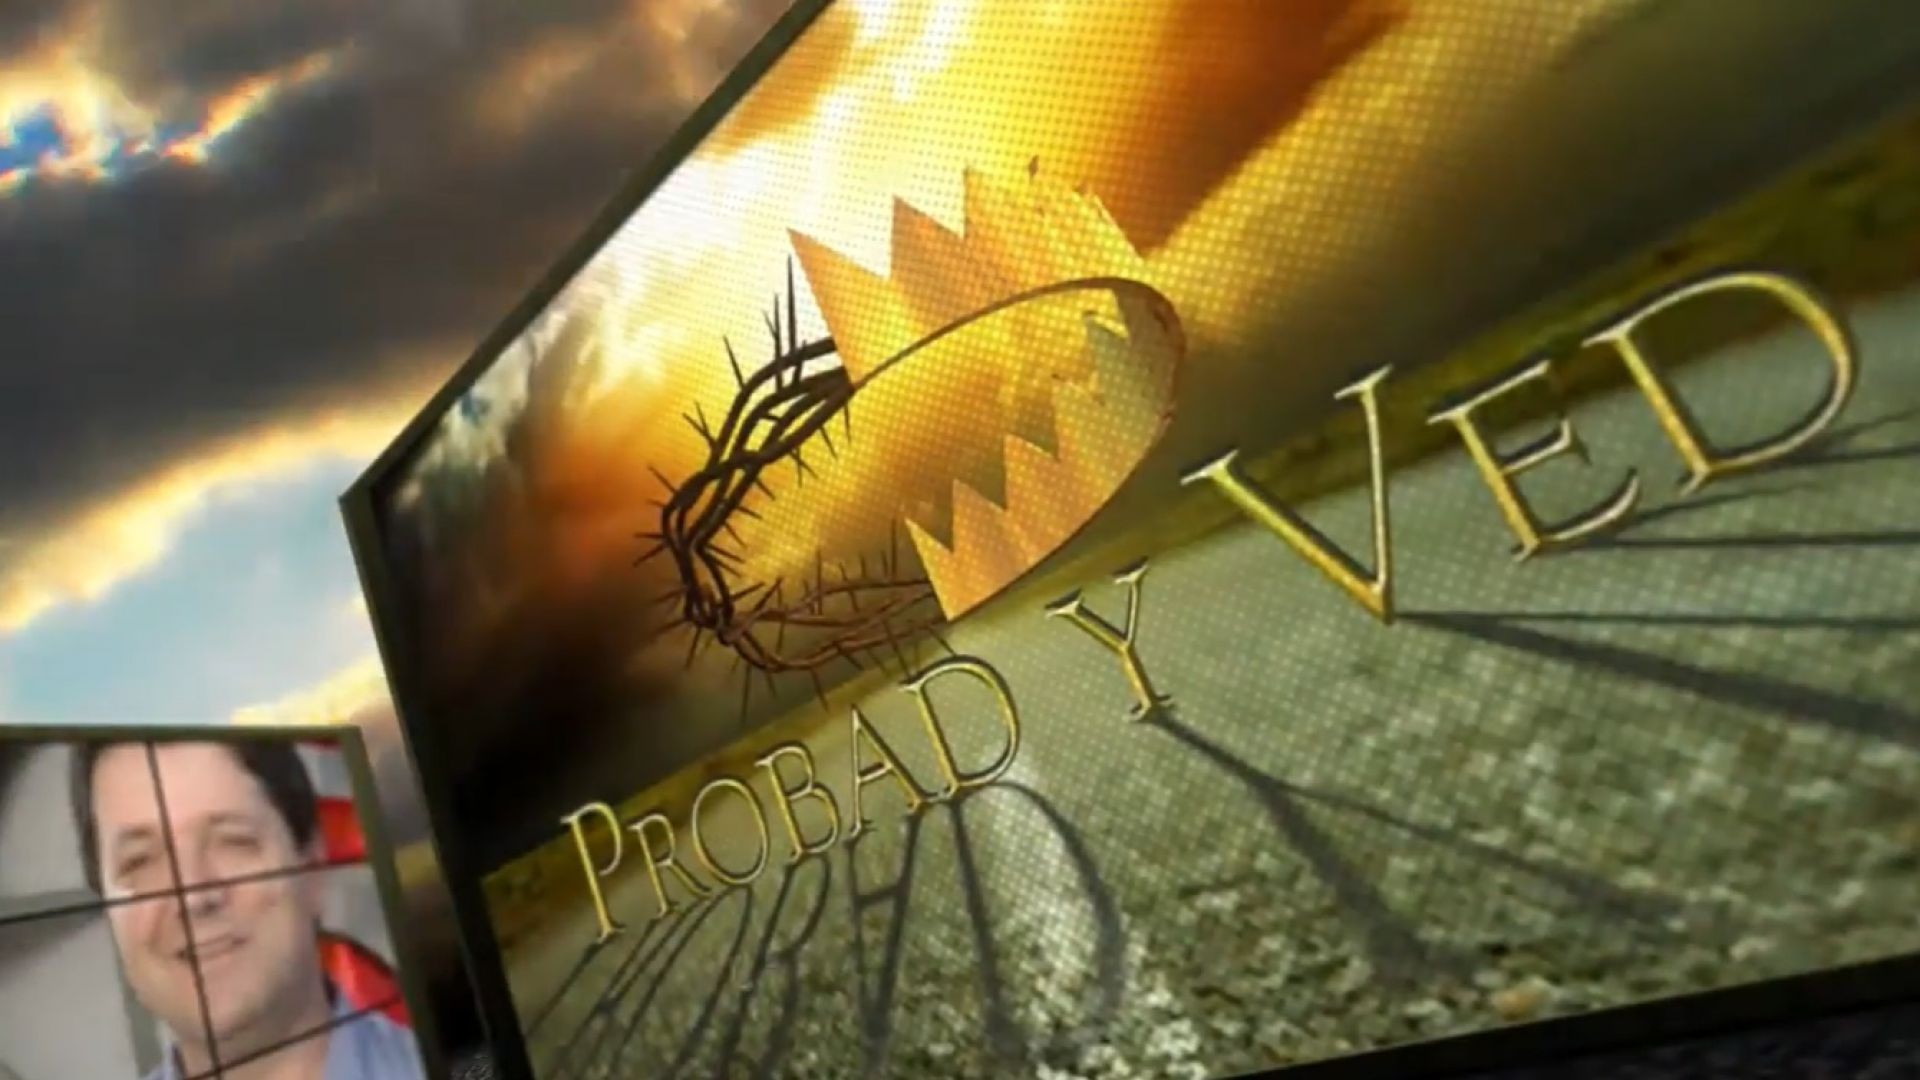 ⁣Probad y Ved 2012 - El sabado es sagrado